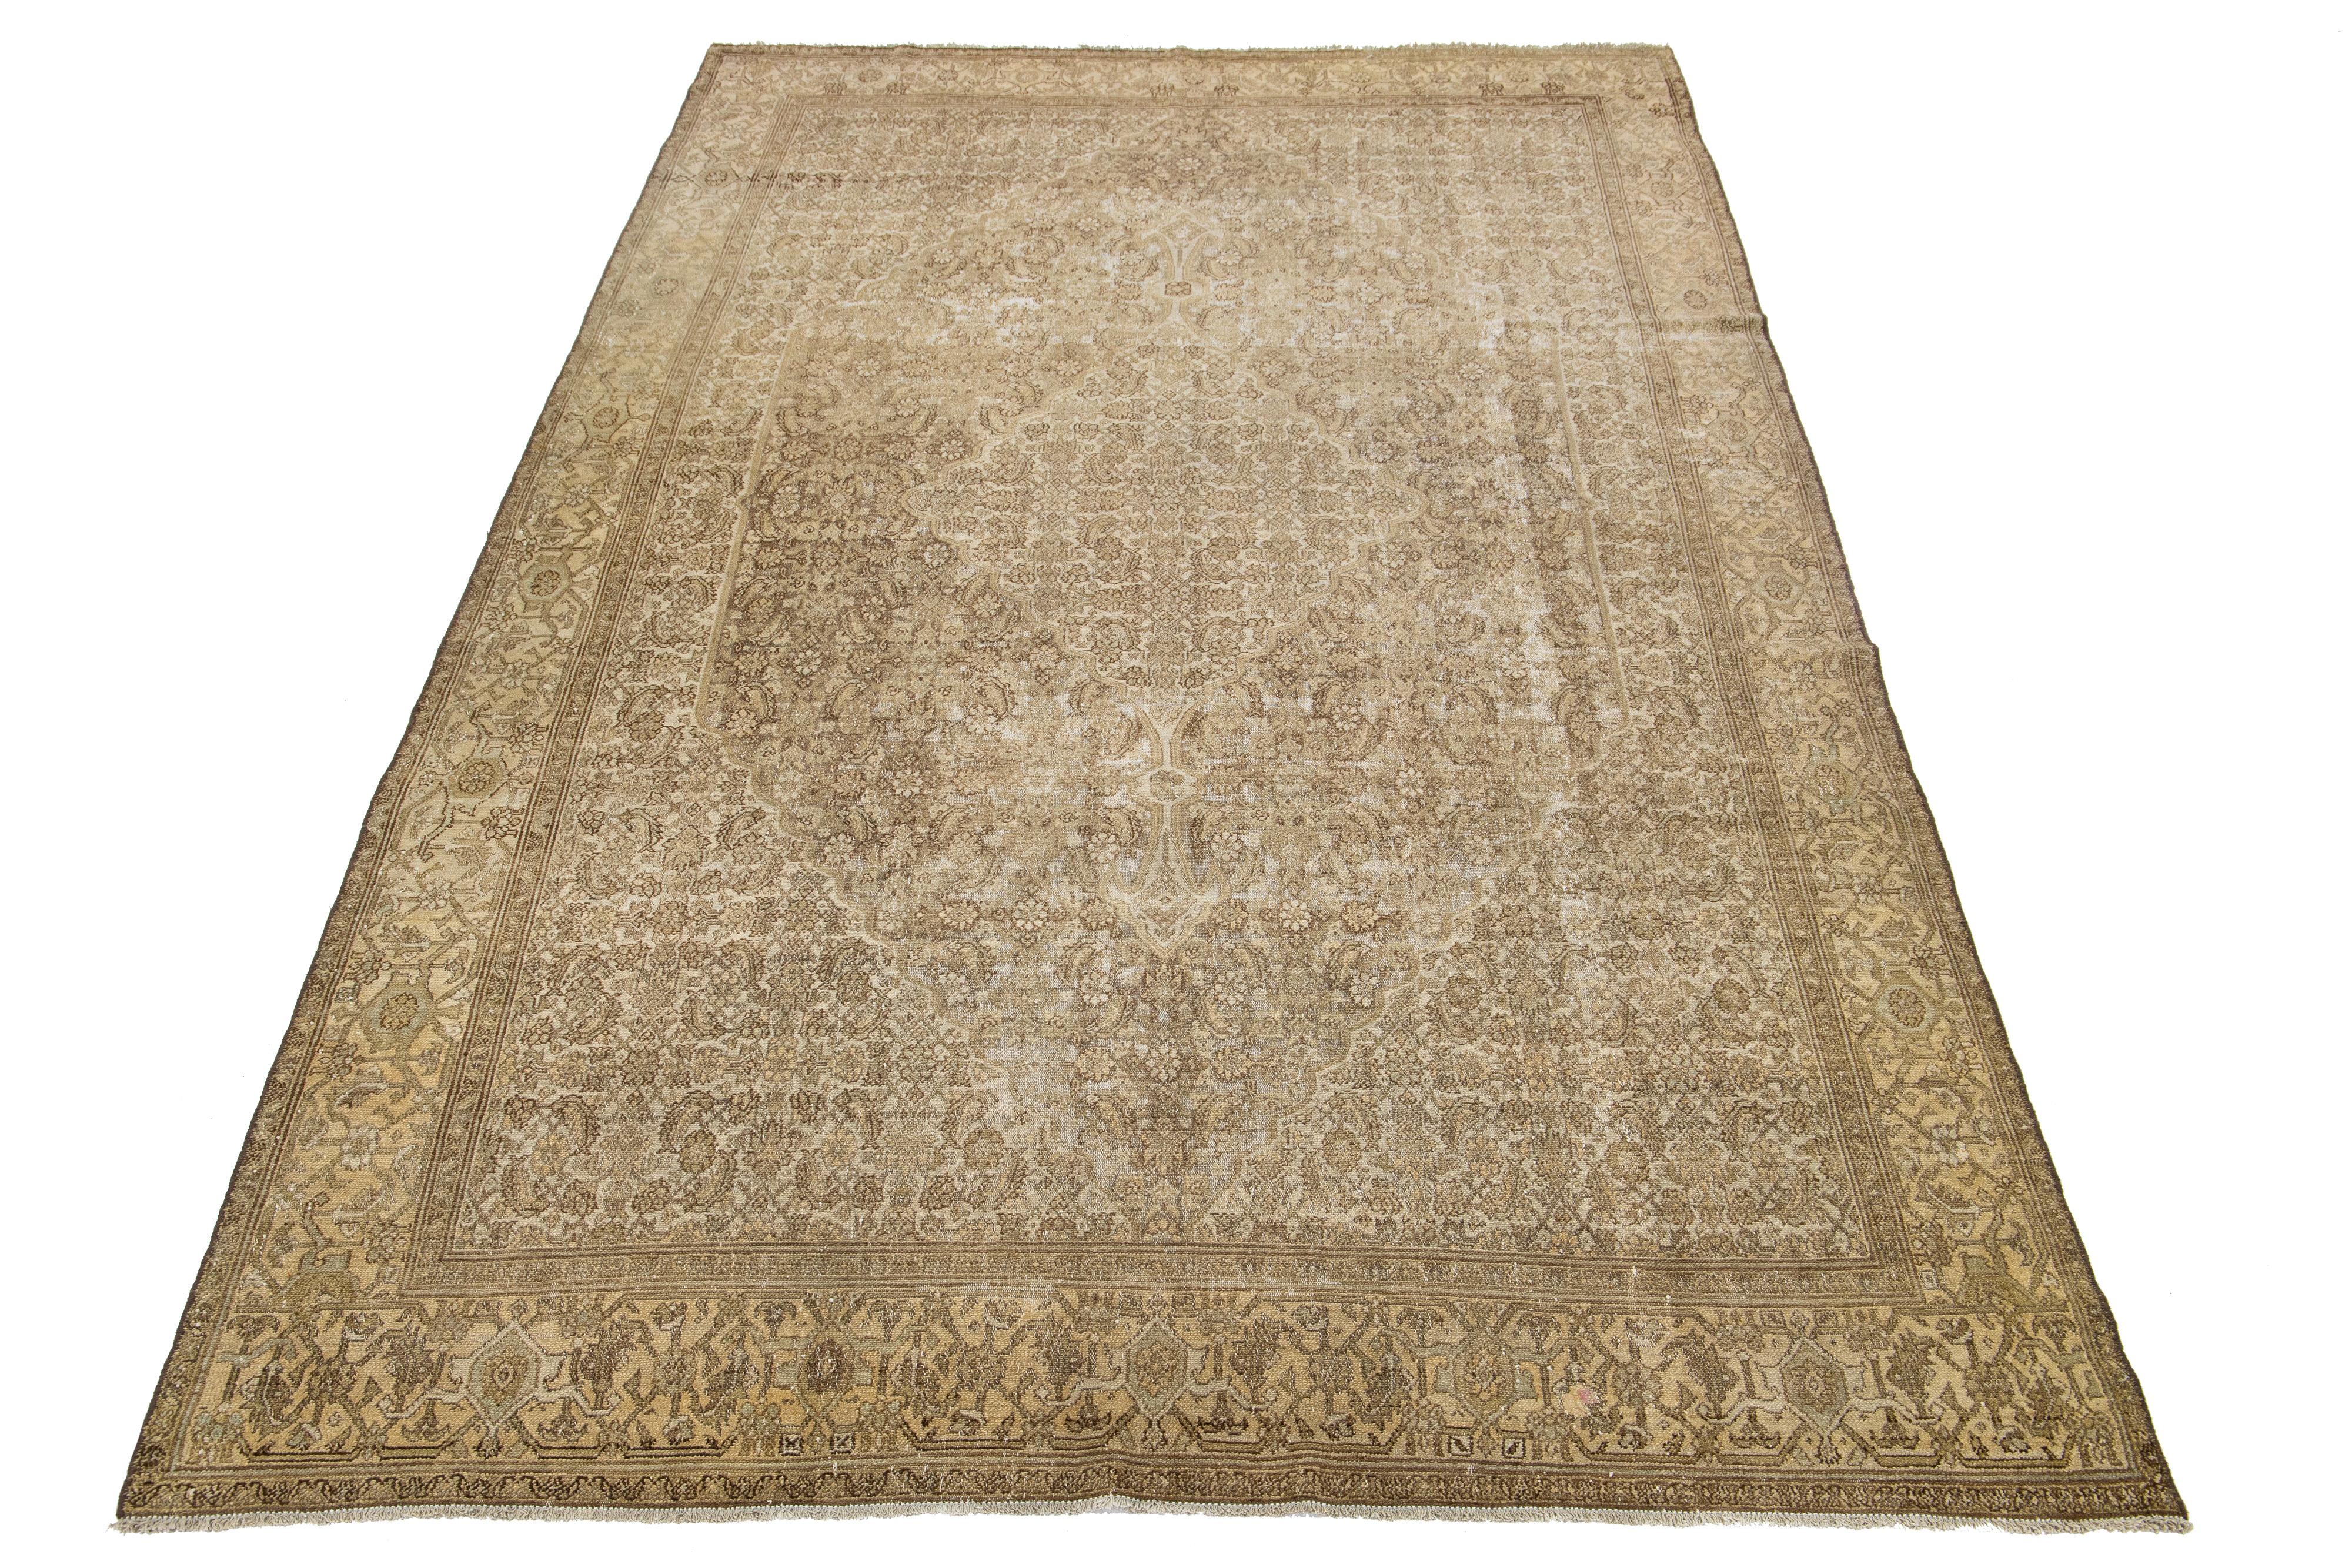 Schöner antiker persischer Malayer Teppich aus handgeknüpfter Wolle mit einem beigen Farbfeld. Dieser Perserteppich hat ein wunderschönes Medaillonmuster mit braunen Akzenten.

Dieser Teppich misst 6'11